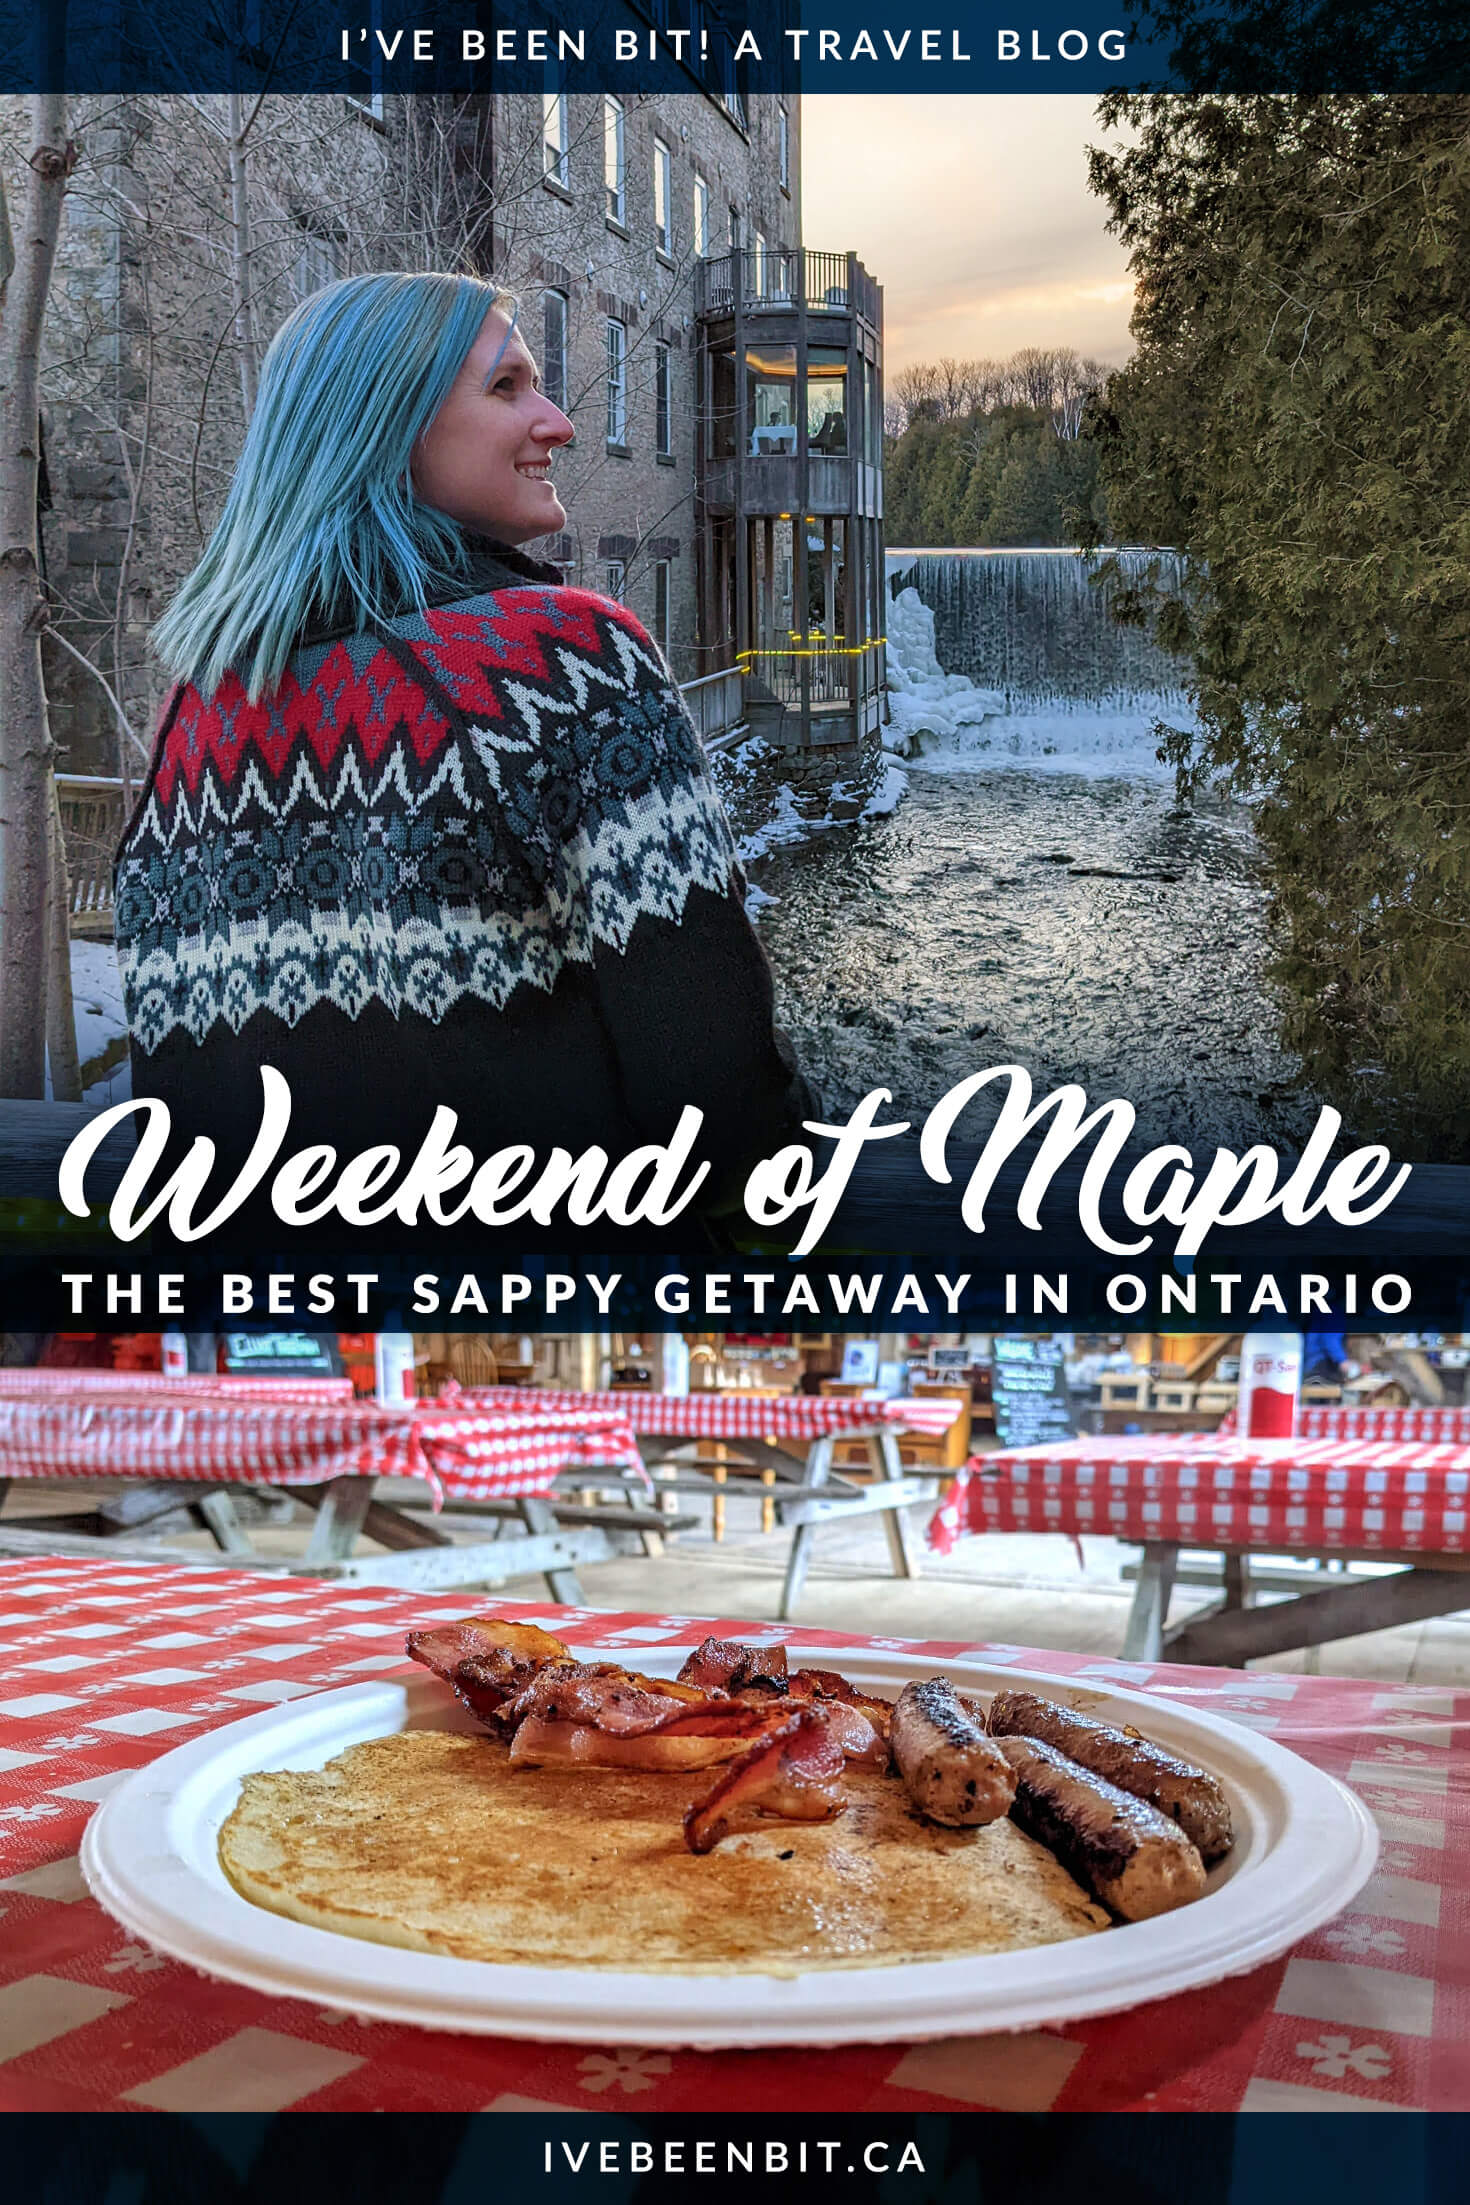 Top Maple Syrup Getaway in Ontario | Amazing Ontario Maple Syrup Getaway | Ontario Weekend Getaways Winter | Spring Weekend Getaways in Ontario | Ontario Road Trip Weekend Getaways | Weekend Getaway Ideas in Ontario | Alton Ontario | Headwaters Region | York Durham Headwaters | #Ontario #RoadTrip #MapleSyrup | IveBeenBit.ca